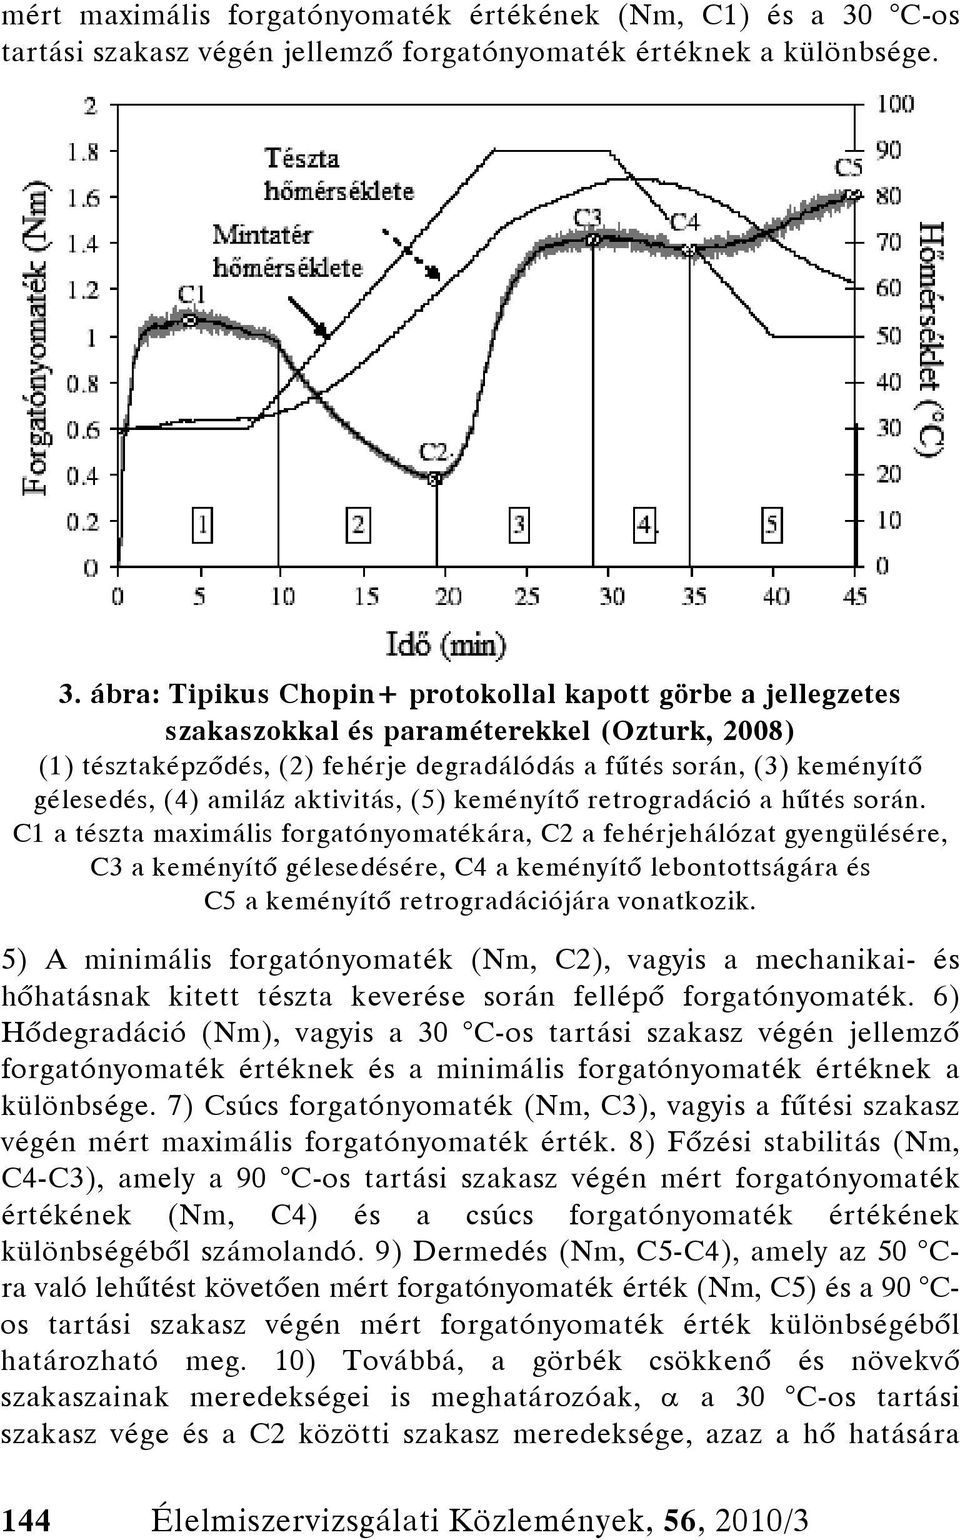 ábra: Tipikus Chopin+ protokollal kapott görbe a jellegzetes szakaszokkal és paraméterekkel (Ozturk, 2008) (1) tésztaképződés, (2) fehérje degradálódás a fűtés során, (3) keményítő gélesedés, (4)